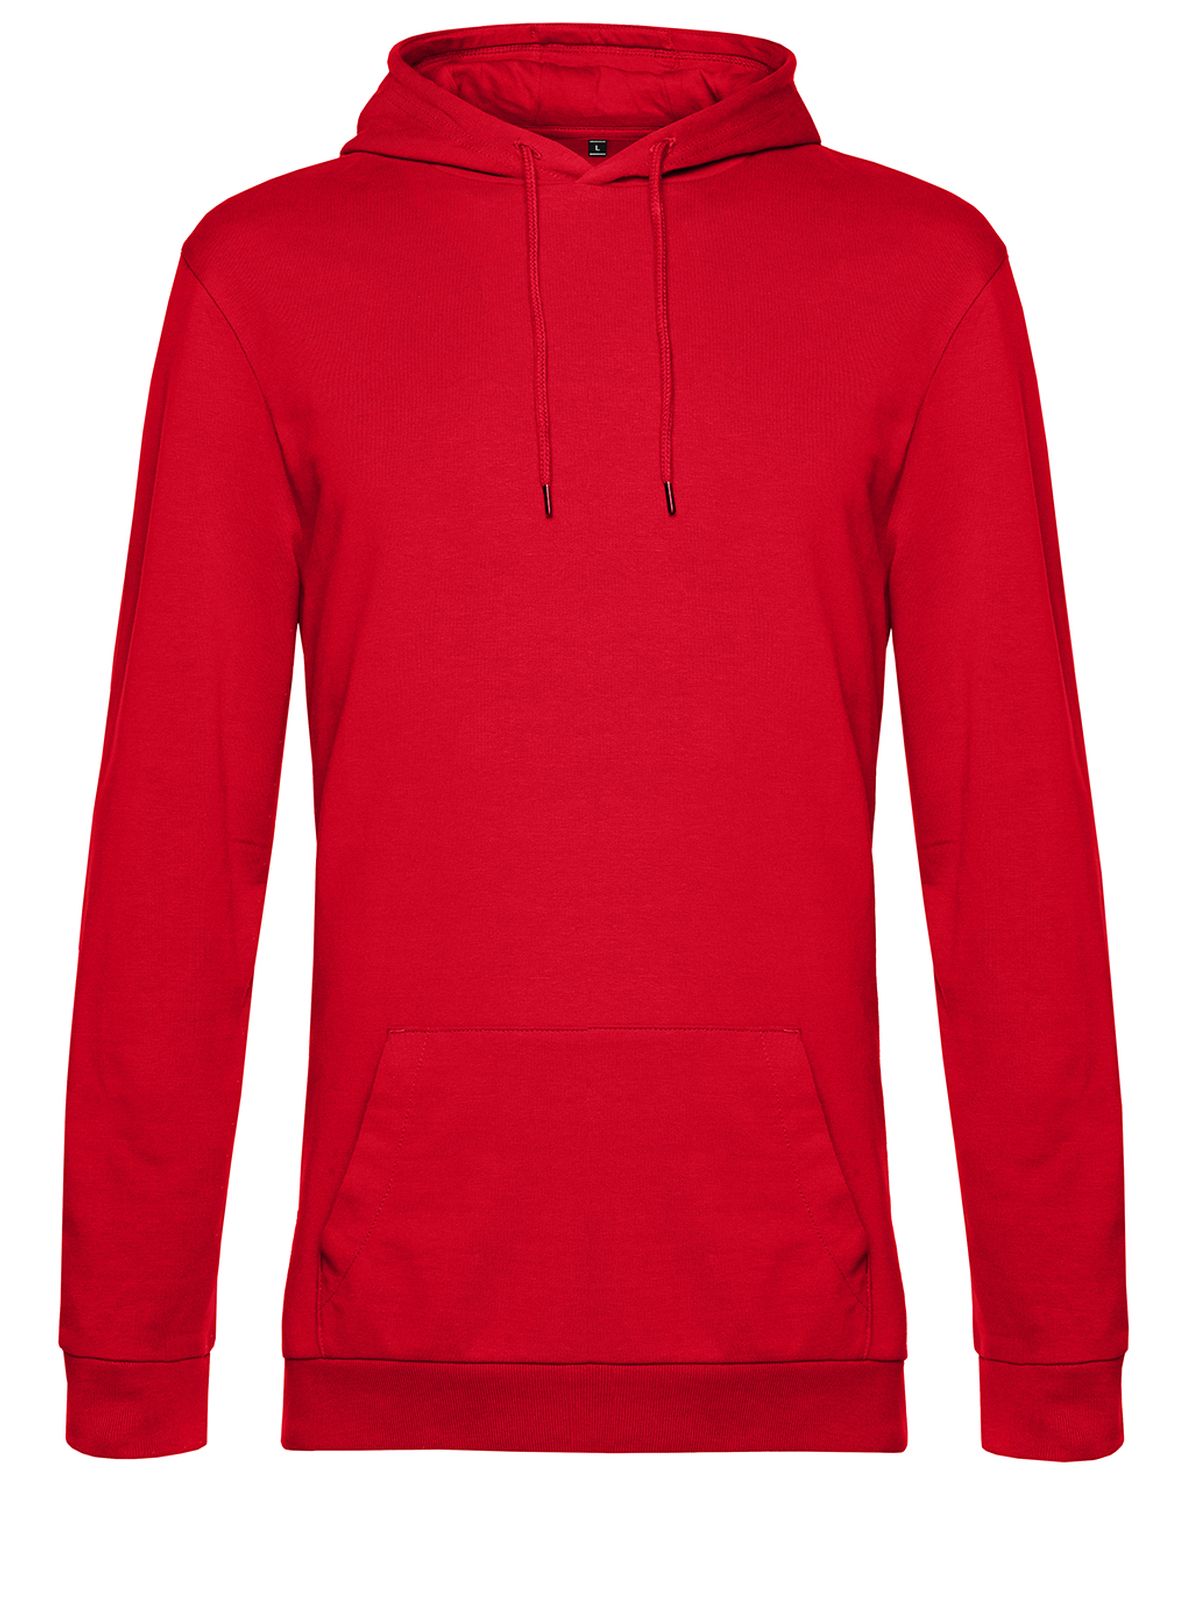 hoodie-red.webp